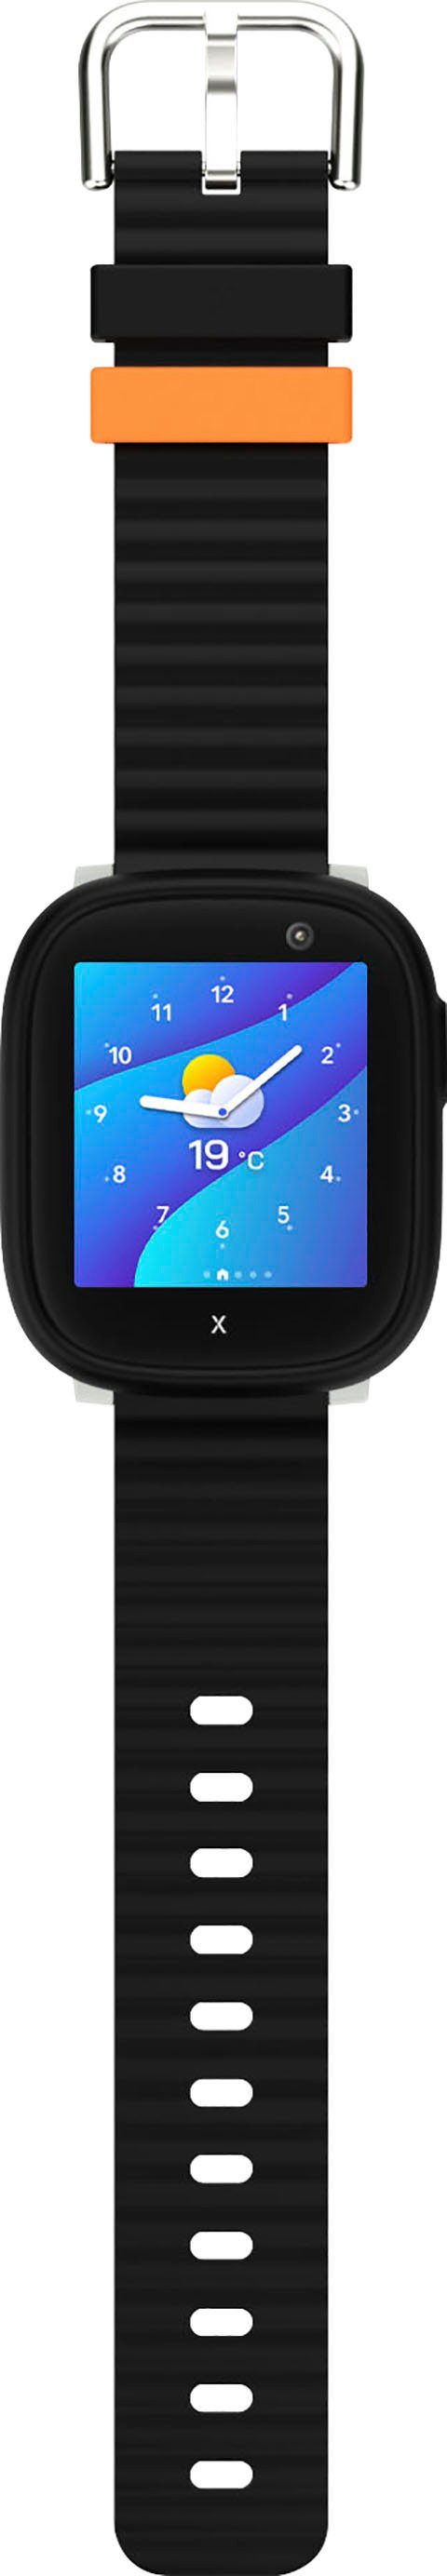 Xplora X6Play Kinder- Smartwatch Wear) Android cm/1,52 schwarz/schwarz (3,86 Zoll